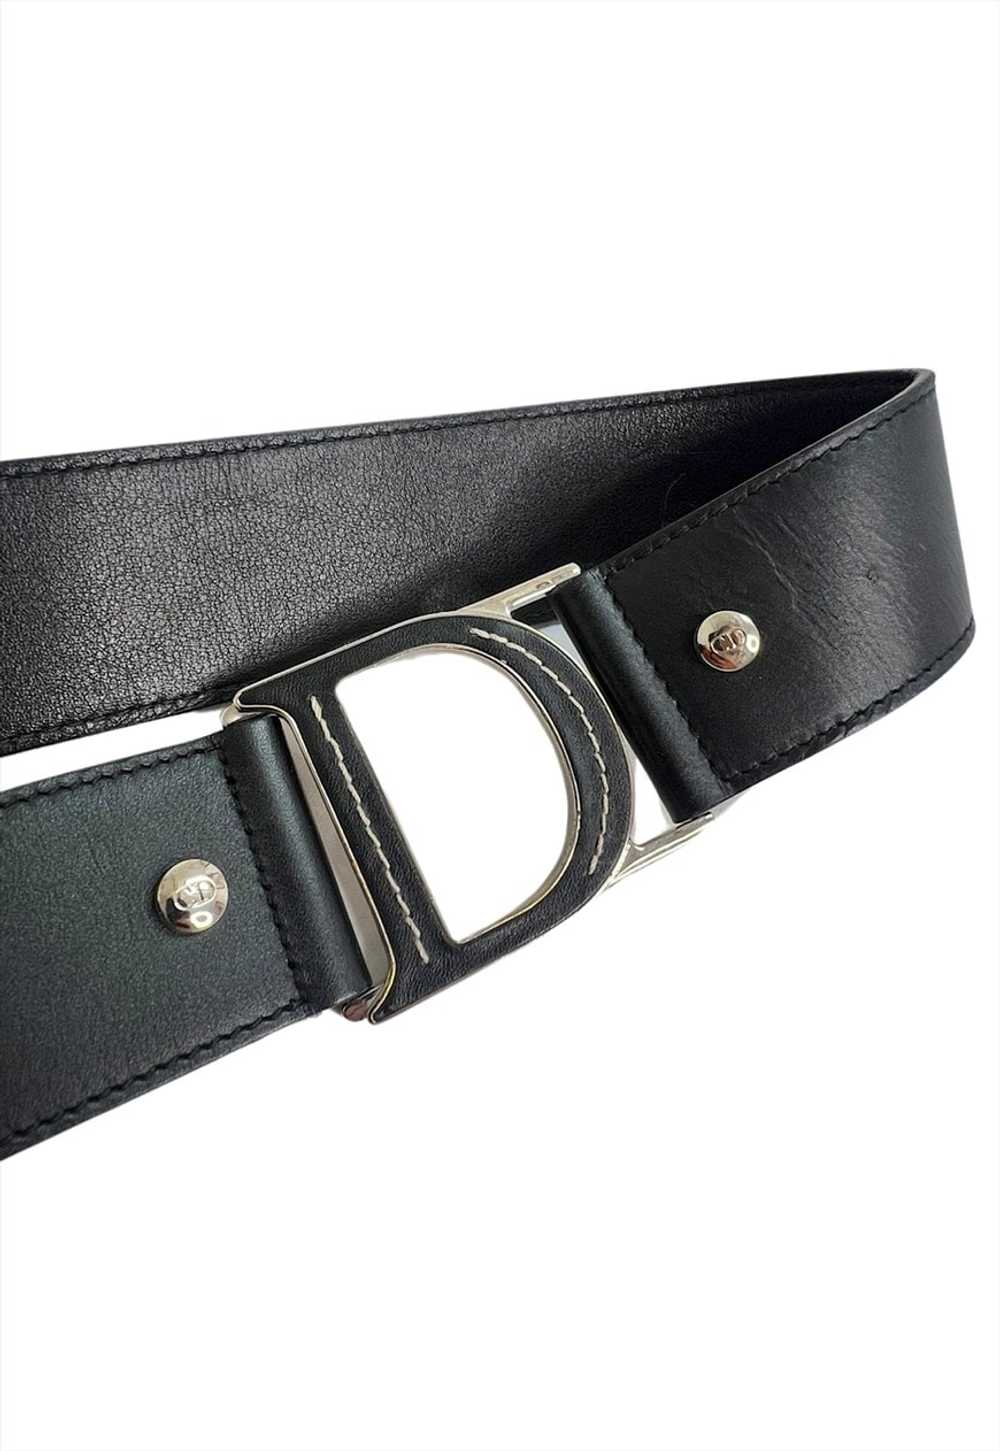 Christian Dior Belt Black Leather C D Buckle Logo… - image 4